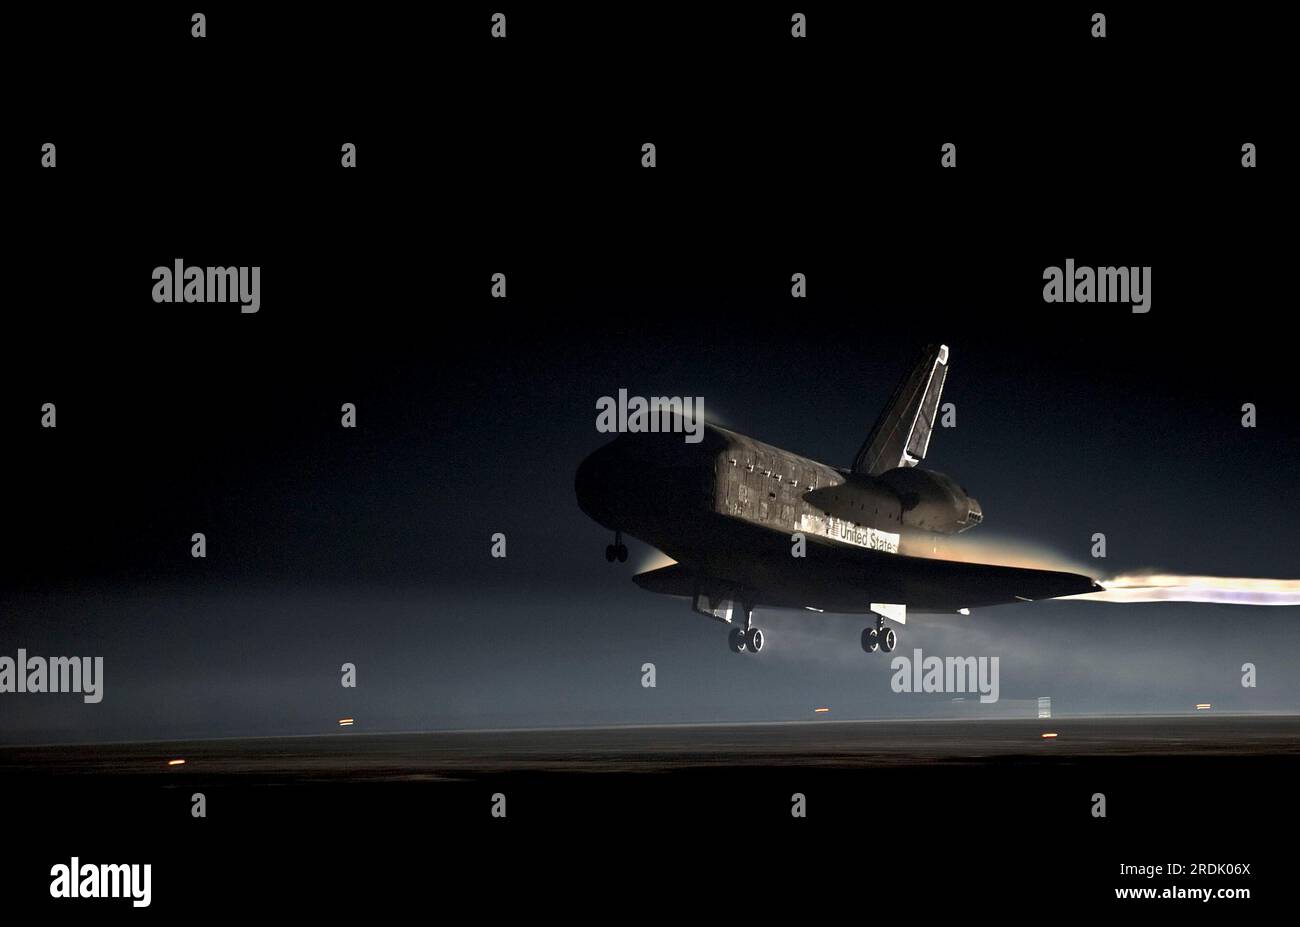 La navetta spaziale Atlantis atterra sulla pista 15 presso la Shuttle Landing Facility del Kennedy Space Center per l'ultima volta giovedì 21 luglio 2011 a Cape Canaveral, Brevard County, Florida, USA. STS-135 è stata la missione finale sia per l'Atlantis Orbiter che per il programma di 30 anni di Space Shuttle. (Foto Apex MediaWire di Kim Shiflett/NASA) Foto Stock